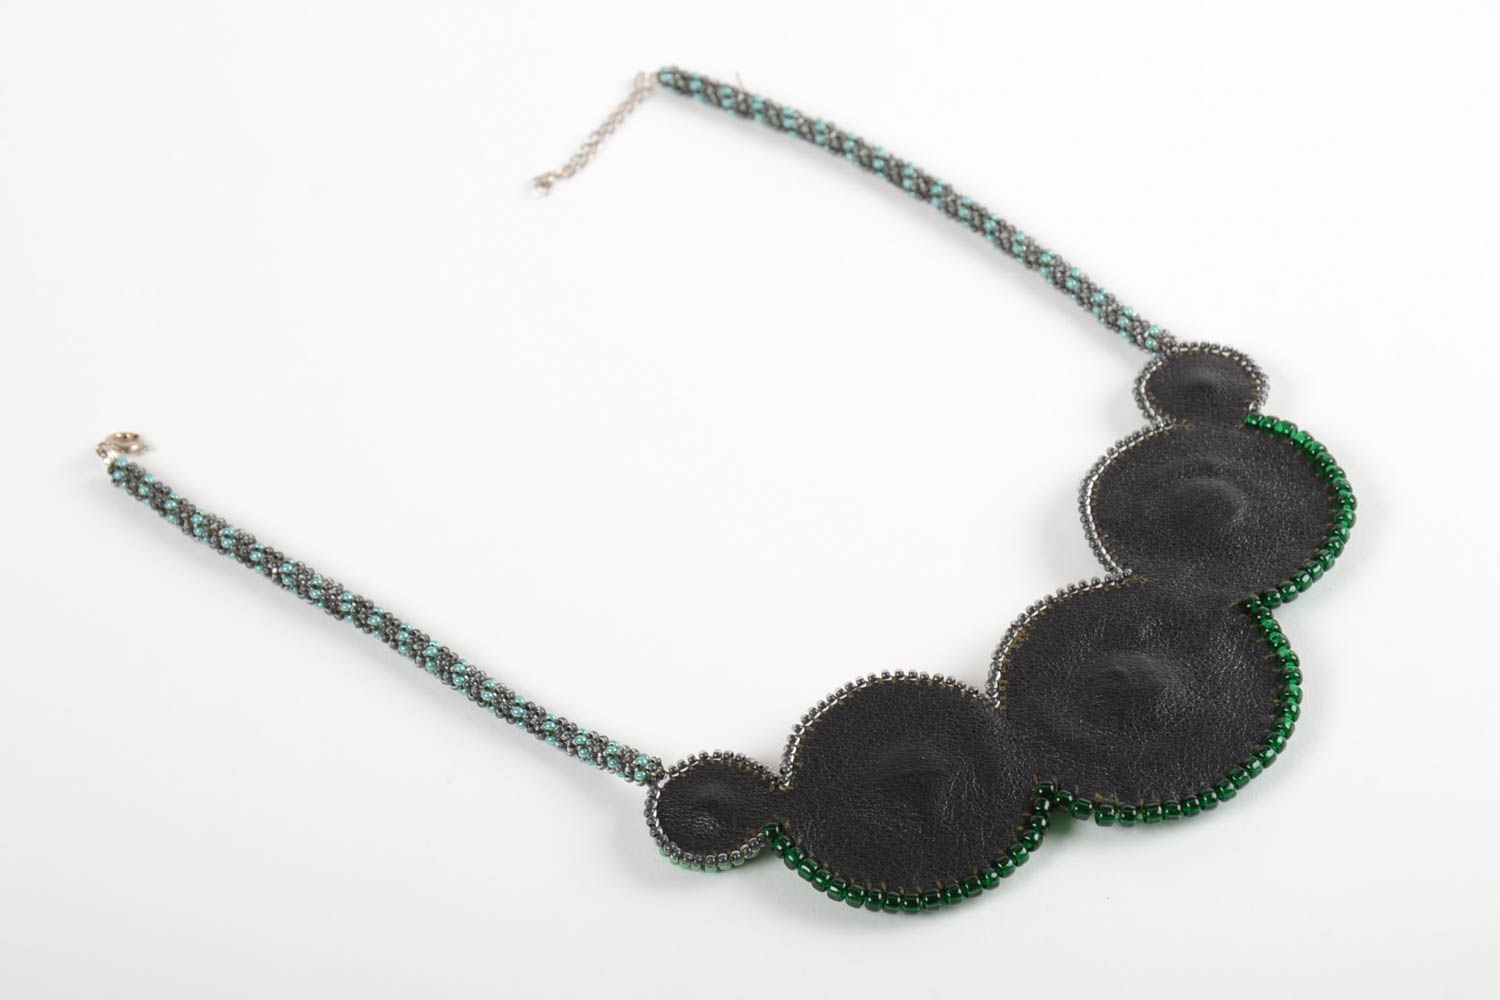 Ожерелье из бисера и натуральных камней на коже ручной работы в зеленых тонах фото 5